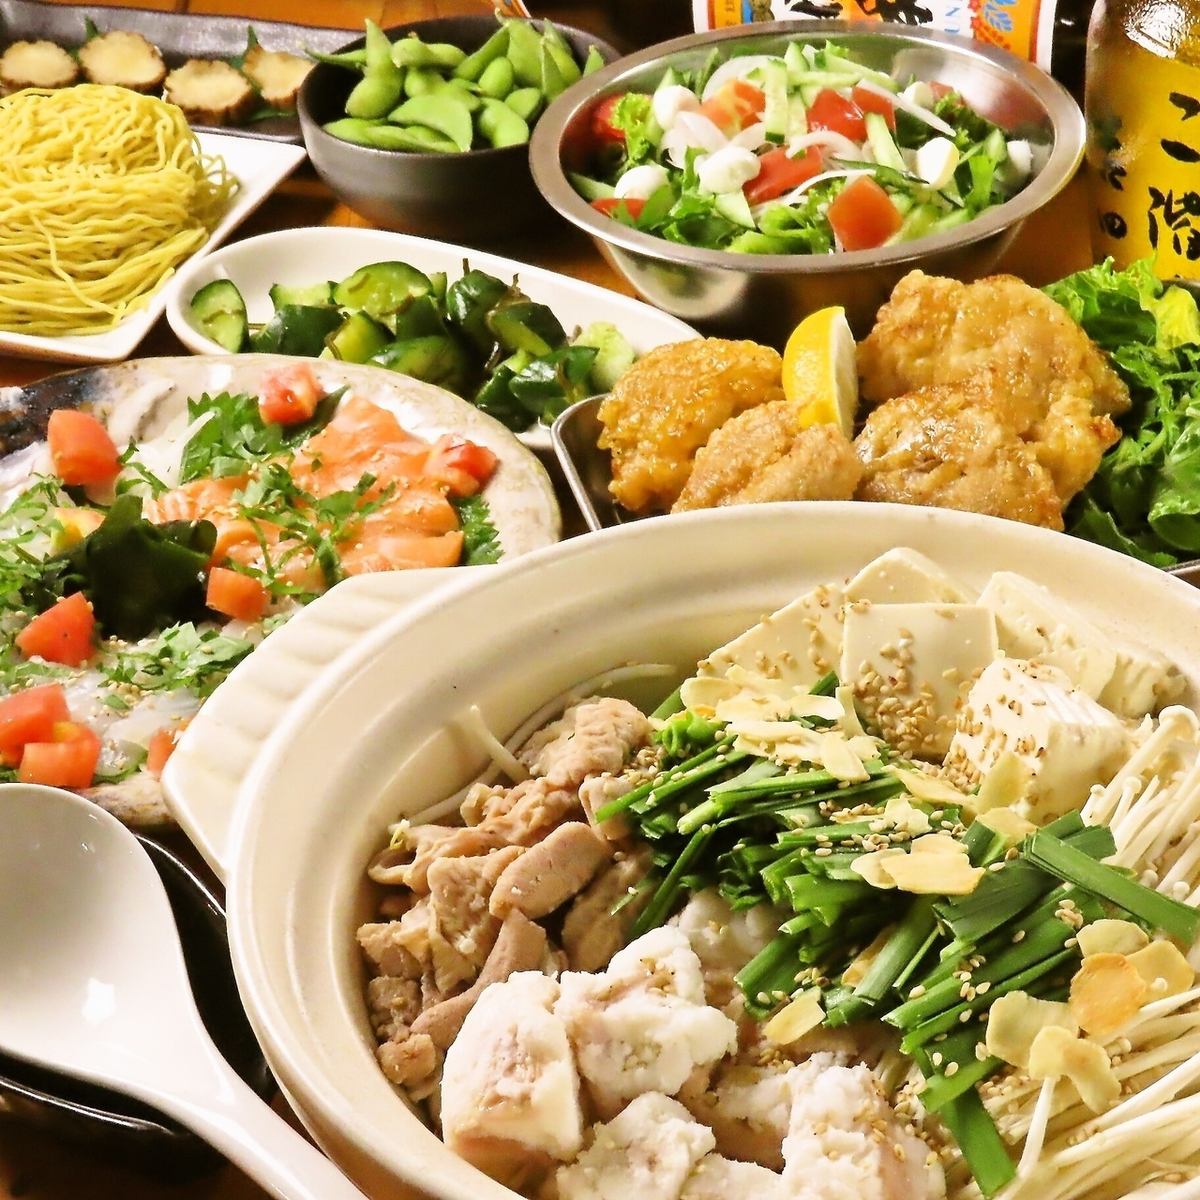 廚師引以為傲的「大津鍋」和「相撲火鍋」是從食材中嚴格挑選的。